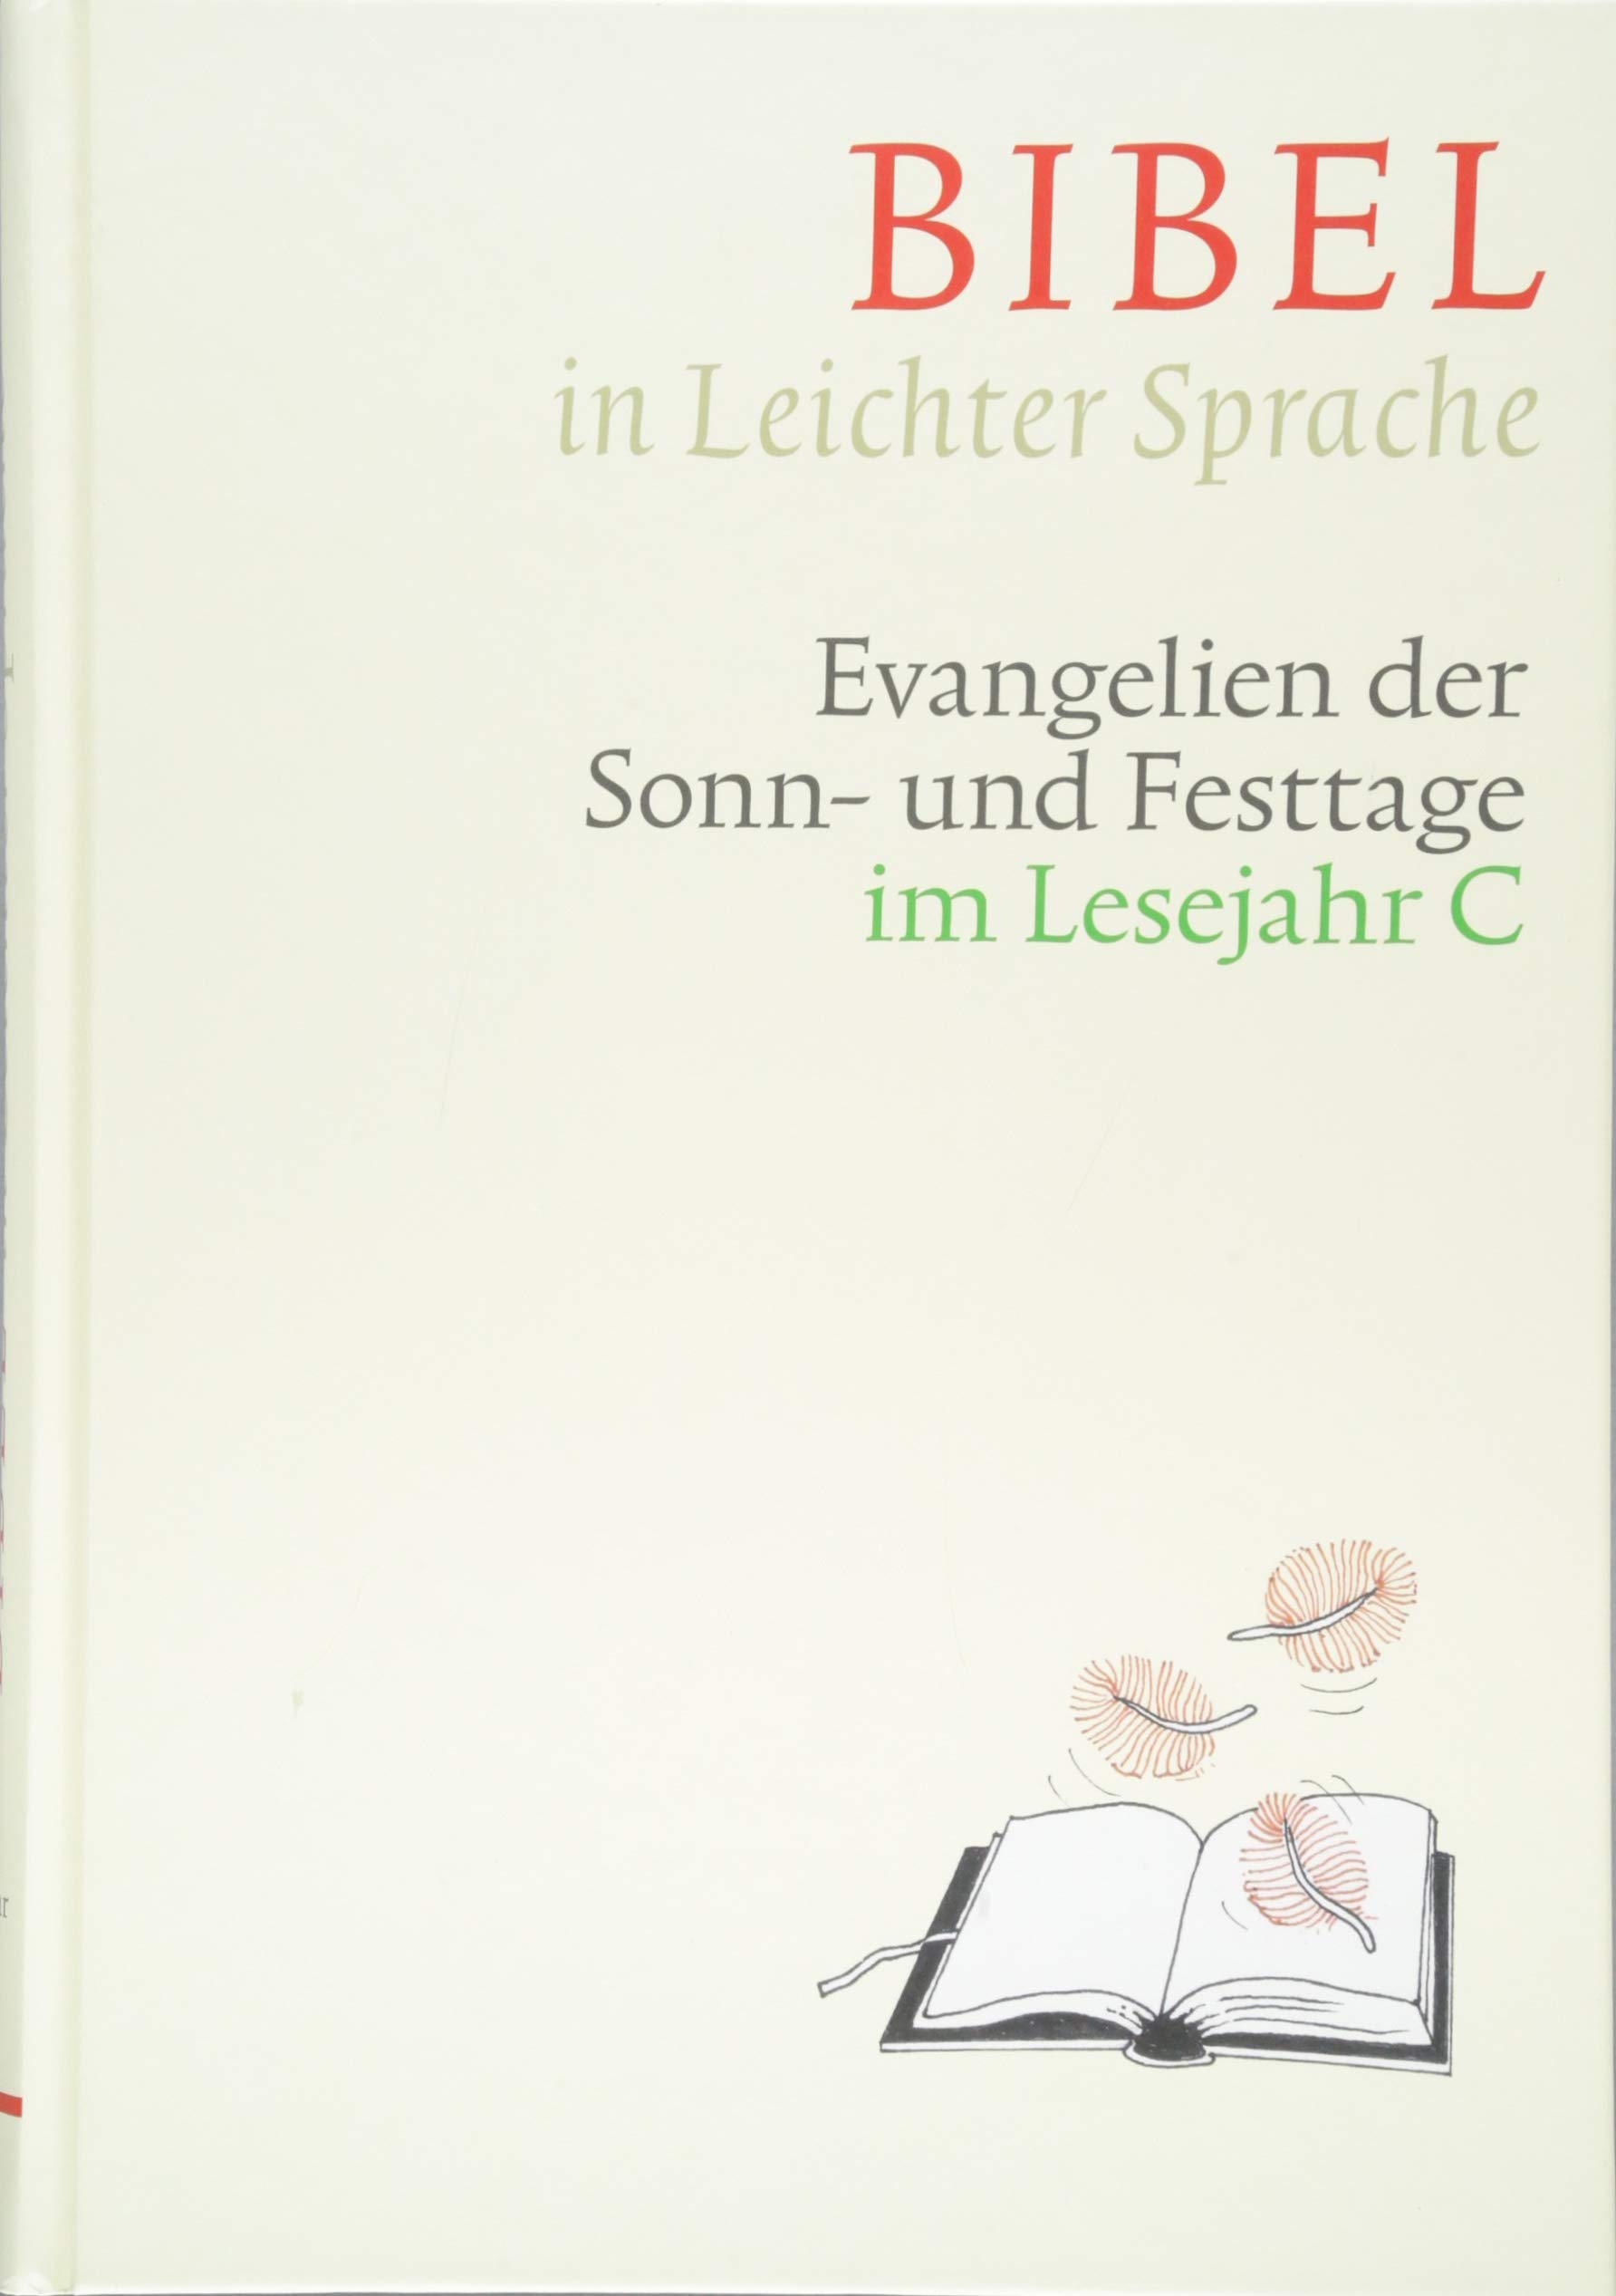 Buchcover: Bibel in Leichter Sprache, Lesejahr C